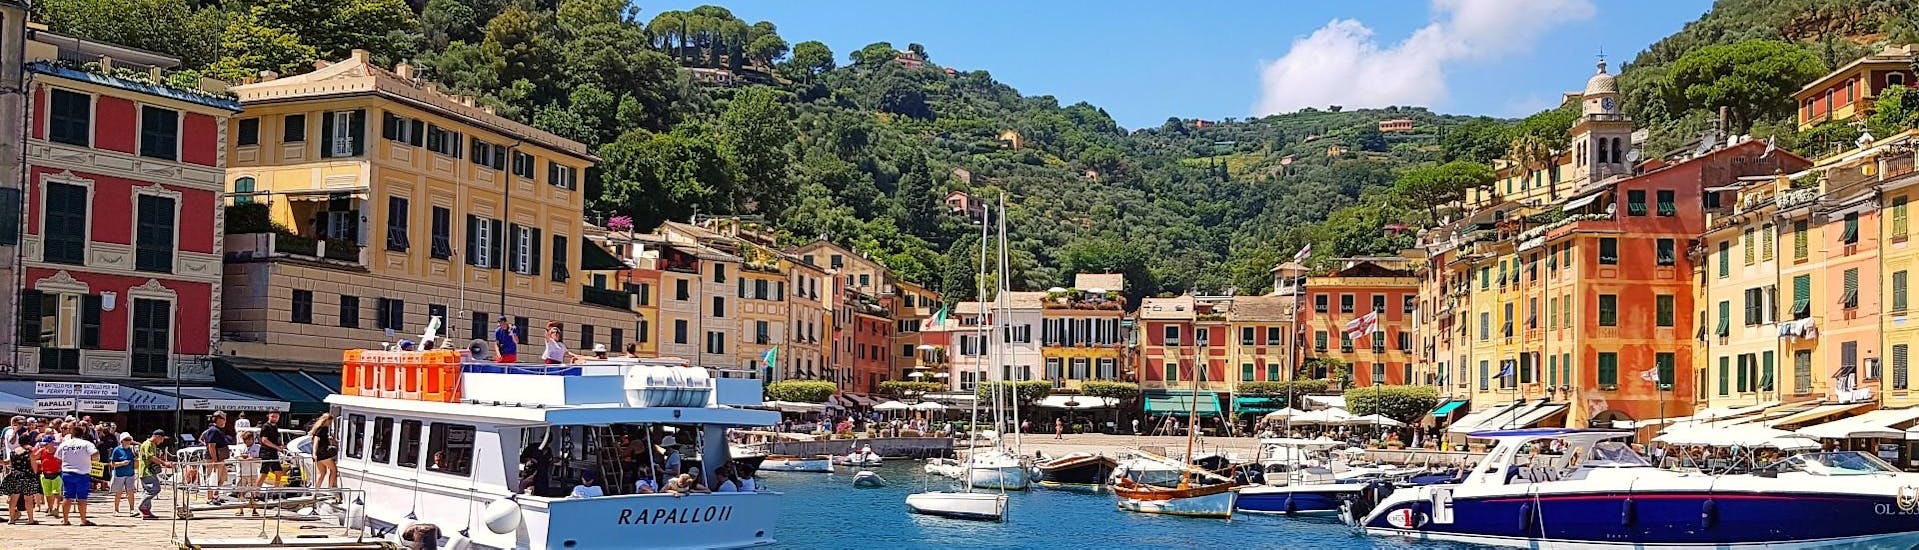 Schöner Blick auf den Hafen von Portofino, aufgenommen vom Boot aus während der privaten Bootstour nach Portofino und San Fruttuoso von Levanto aus.